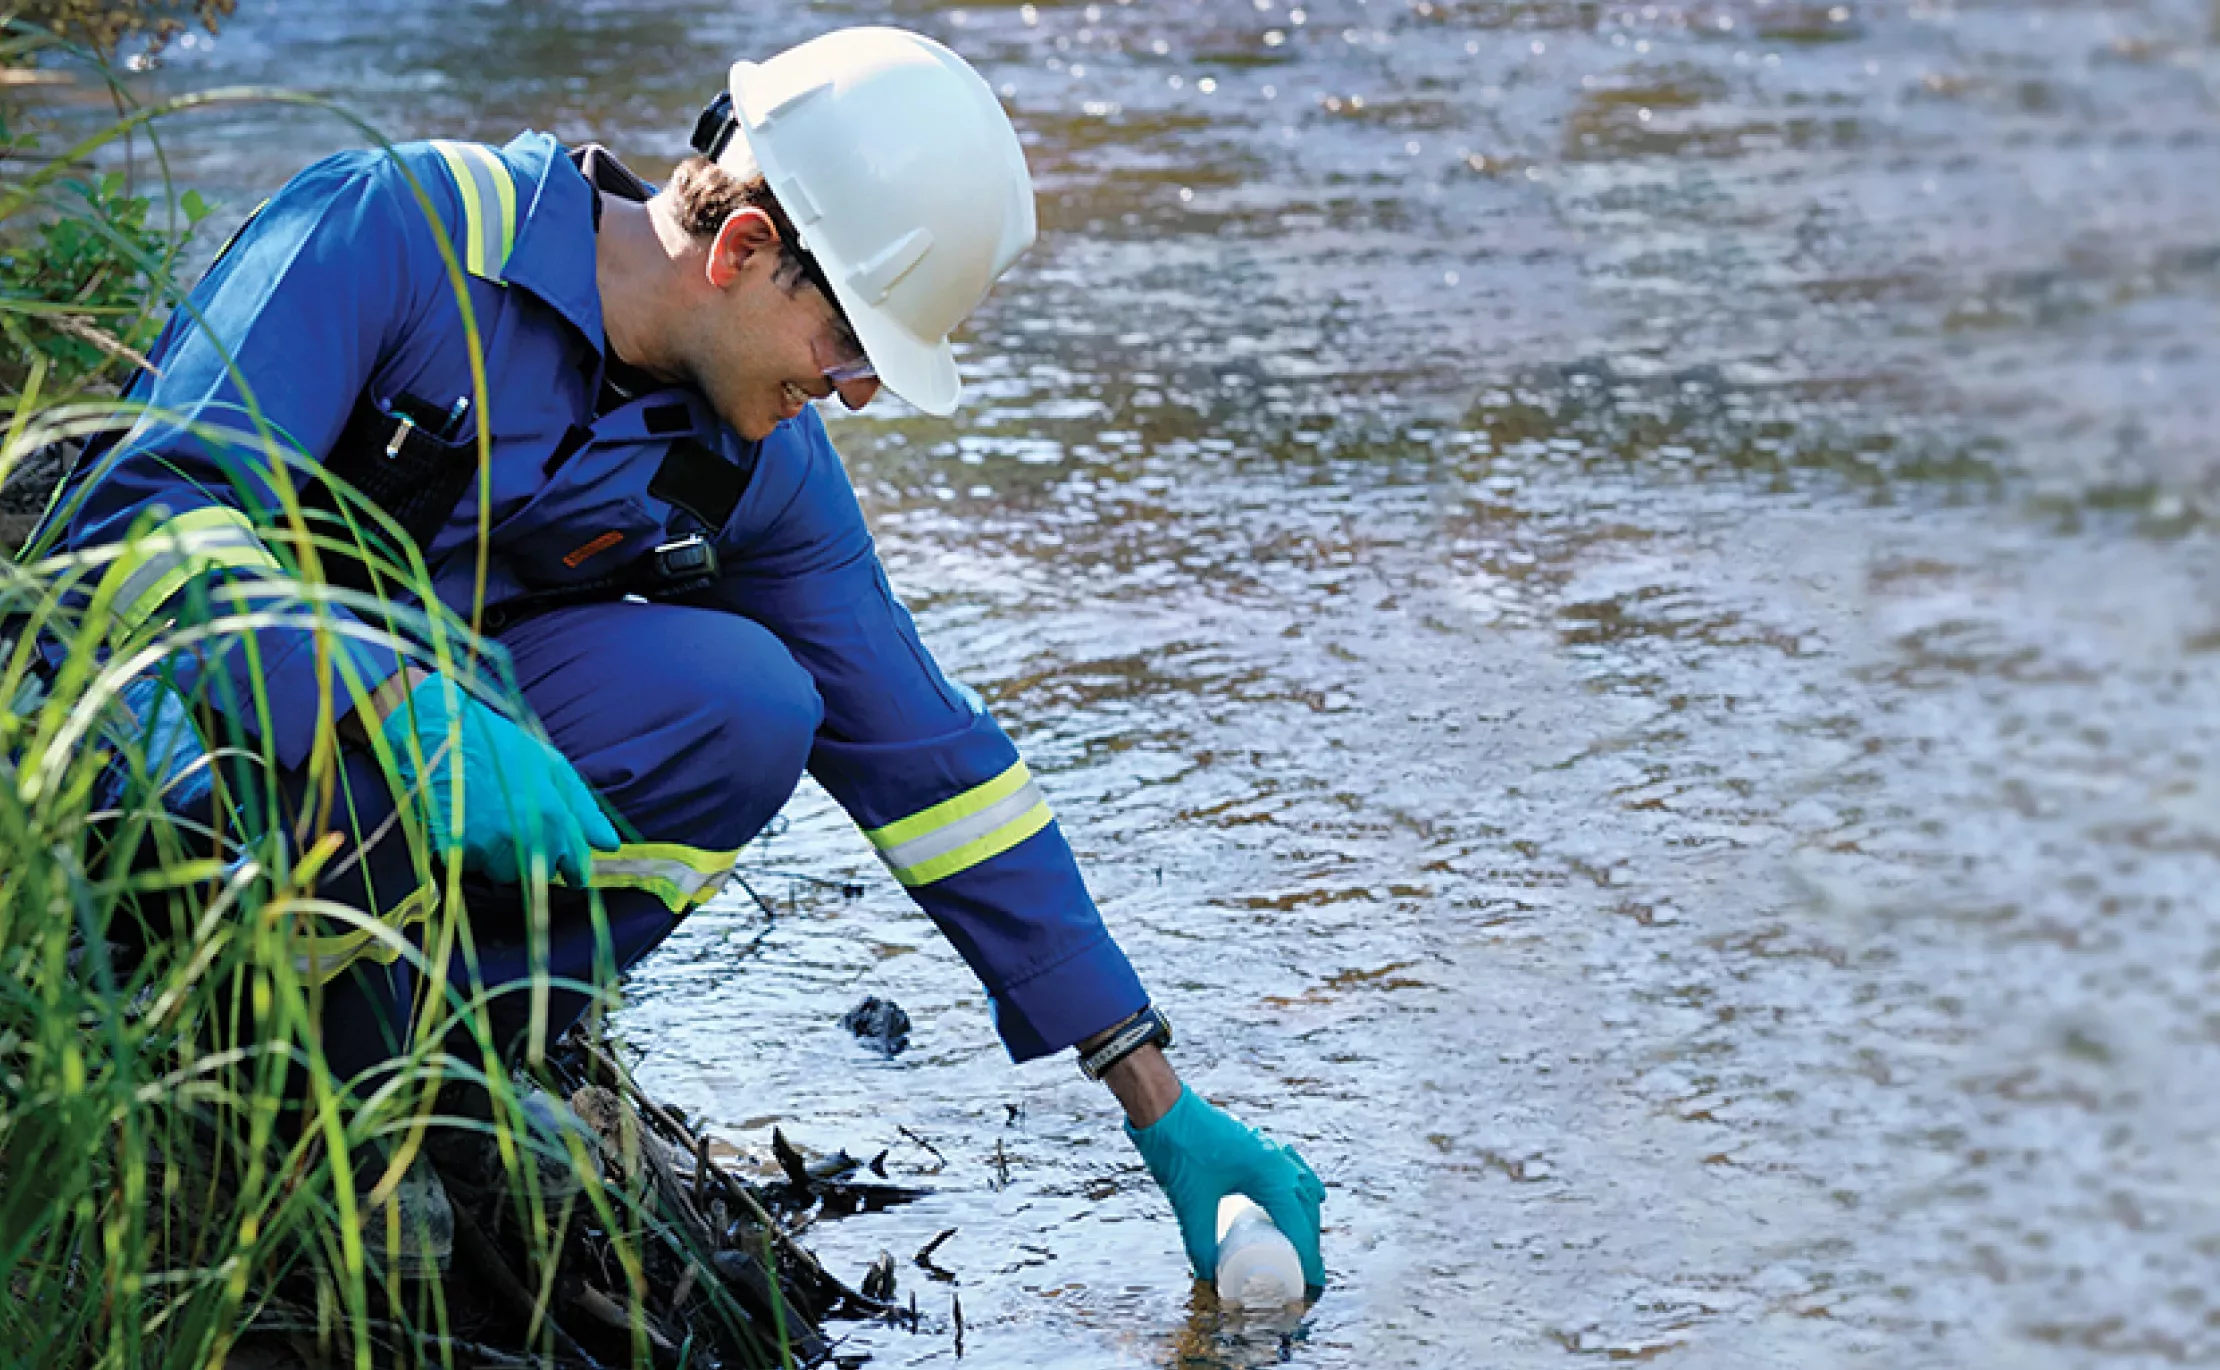 Une personne en uniforme bleu portant des gants est accroupie au bord d’une rivière et récupère un échantillon d’eau.